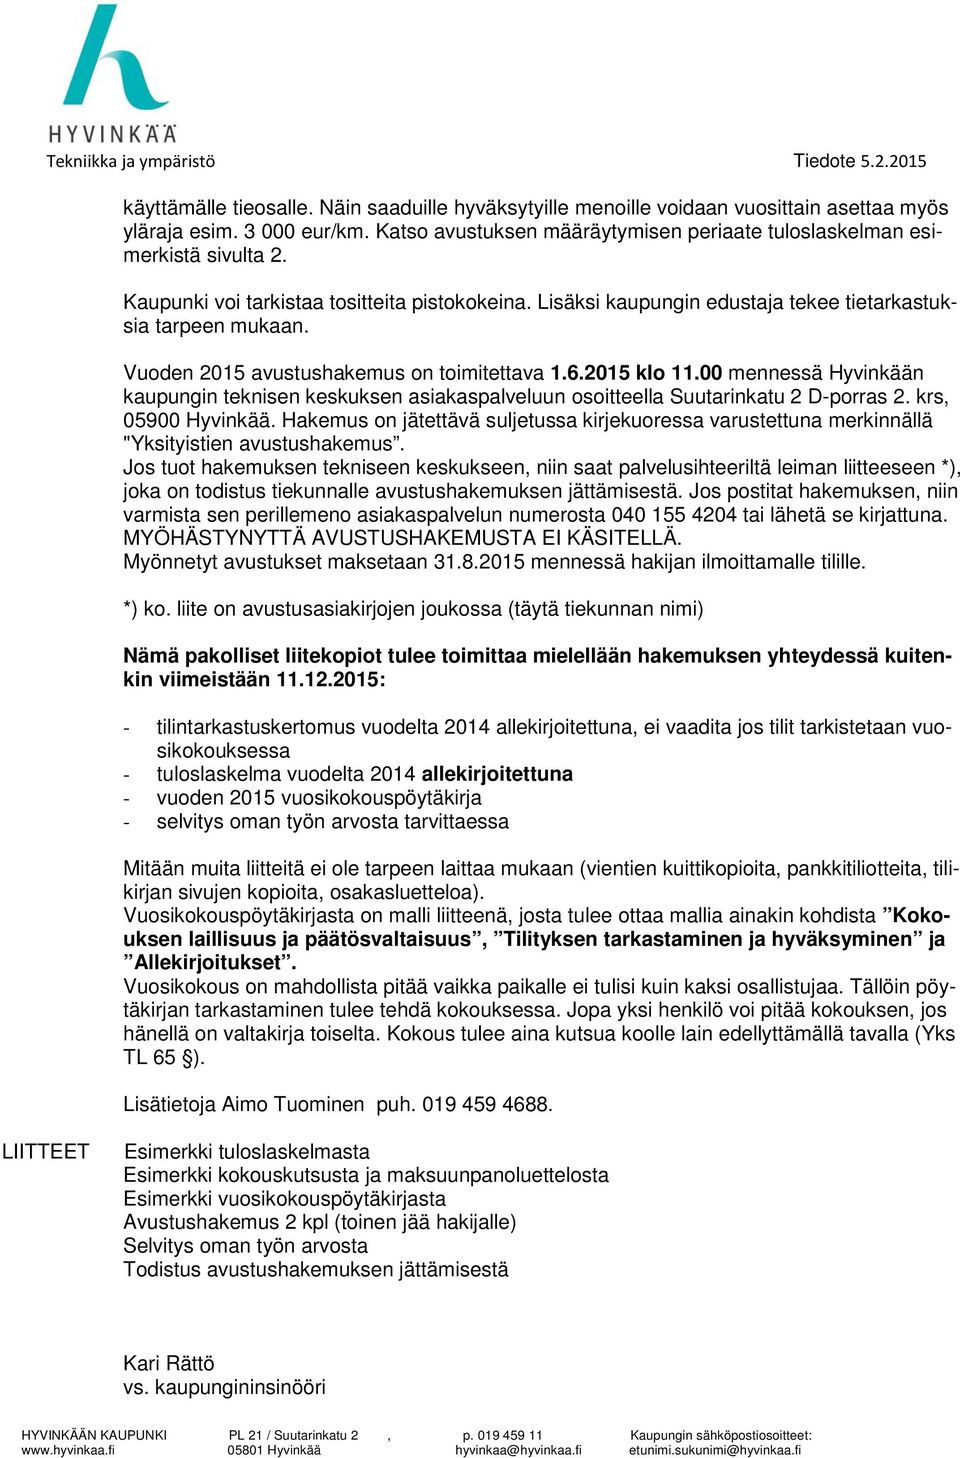 Vuoden 2015 avustushakemus on toimitettava 1.6.2015 klo 11.00 mennessä Hyvinkään kaupungin teknisen keskuksen asiakaspalveluun osoitteella Suutarinkatu 2 D-porras 2. krs, 05900 Hyvinkää.